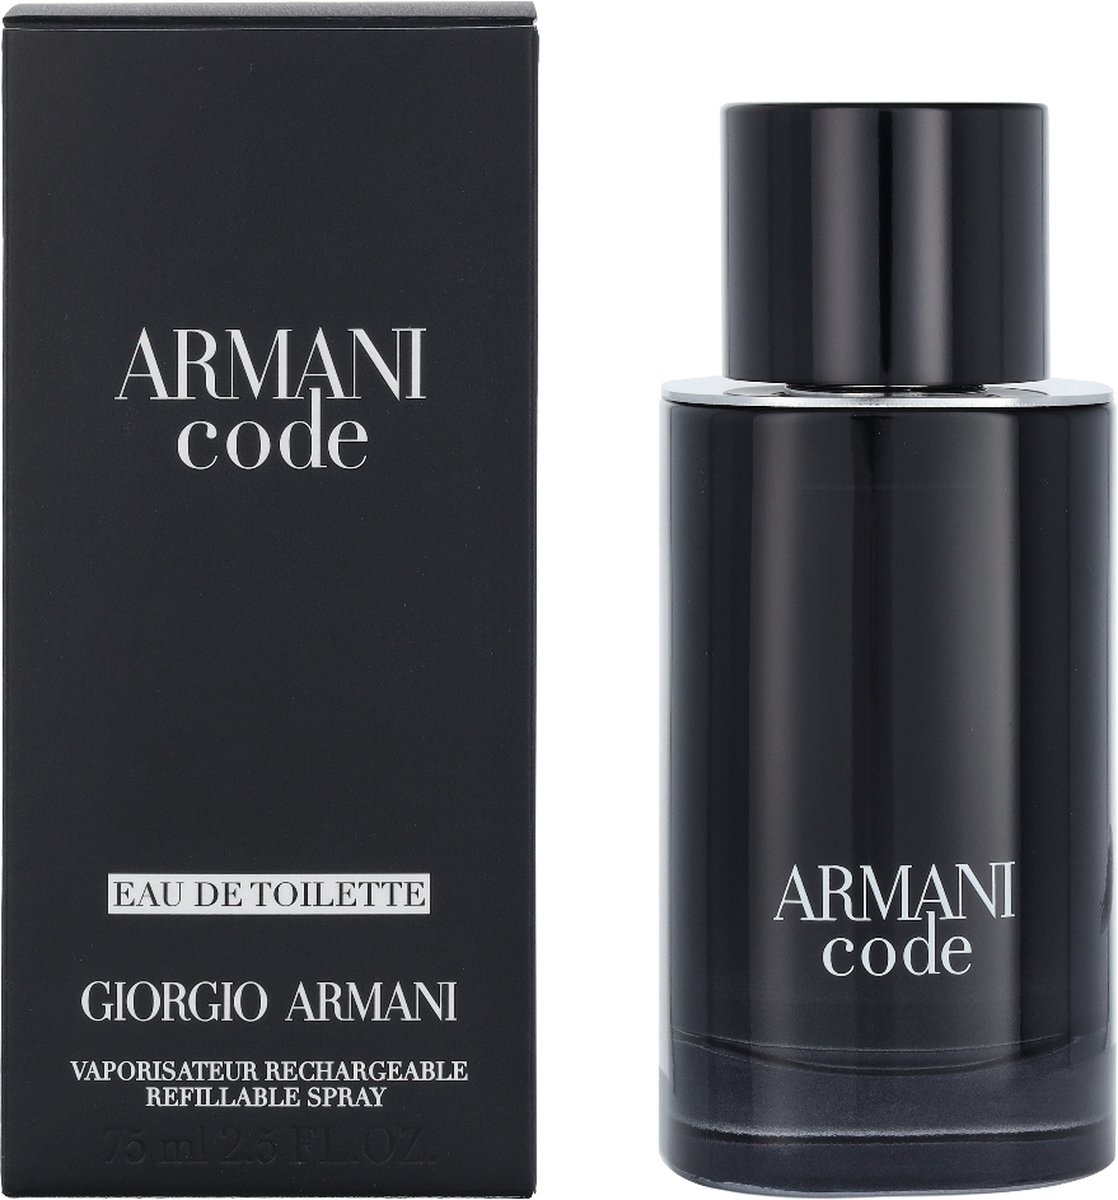 Giorgio Armani Code Homme Eau de toilette rechargeable vaporisateur 75 ml - Emballage endommagé